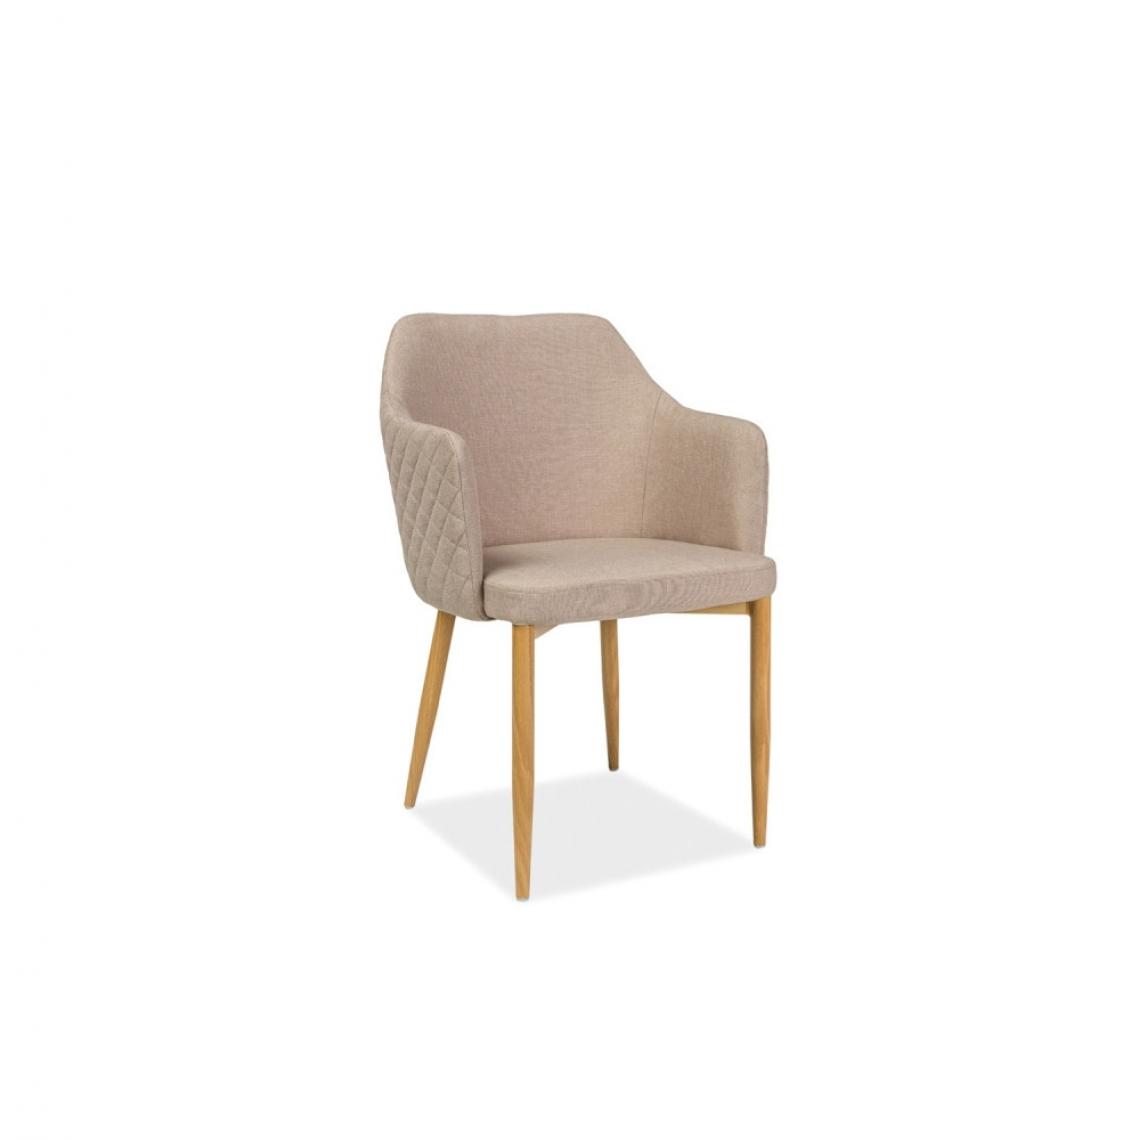 Ac-Deco - Chaise fauteuil en tissu - Astor - 46 x 46 x 84 cm - Beige - Chaises